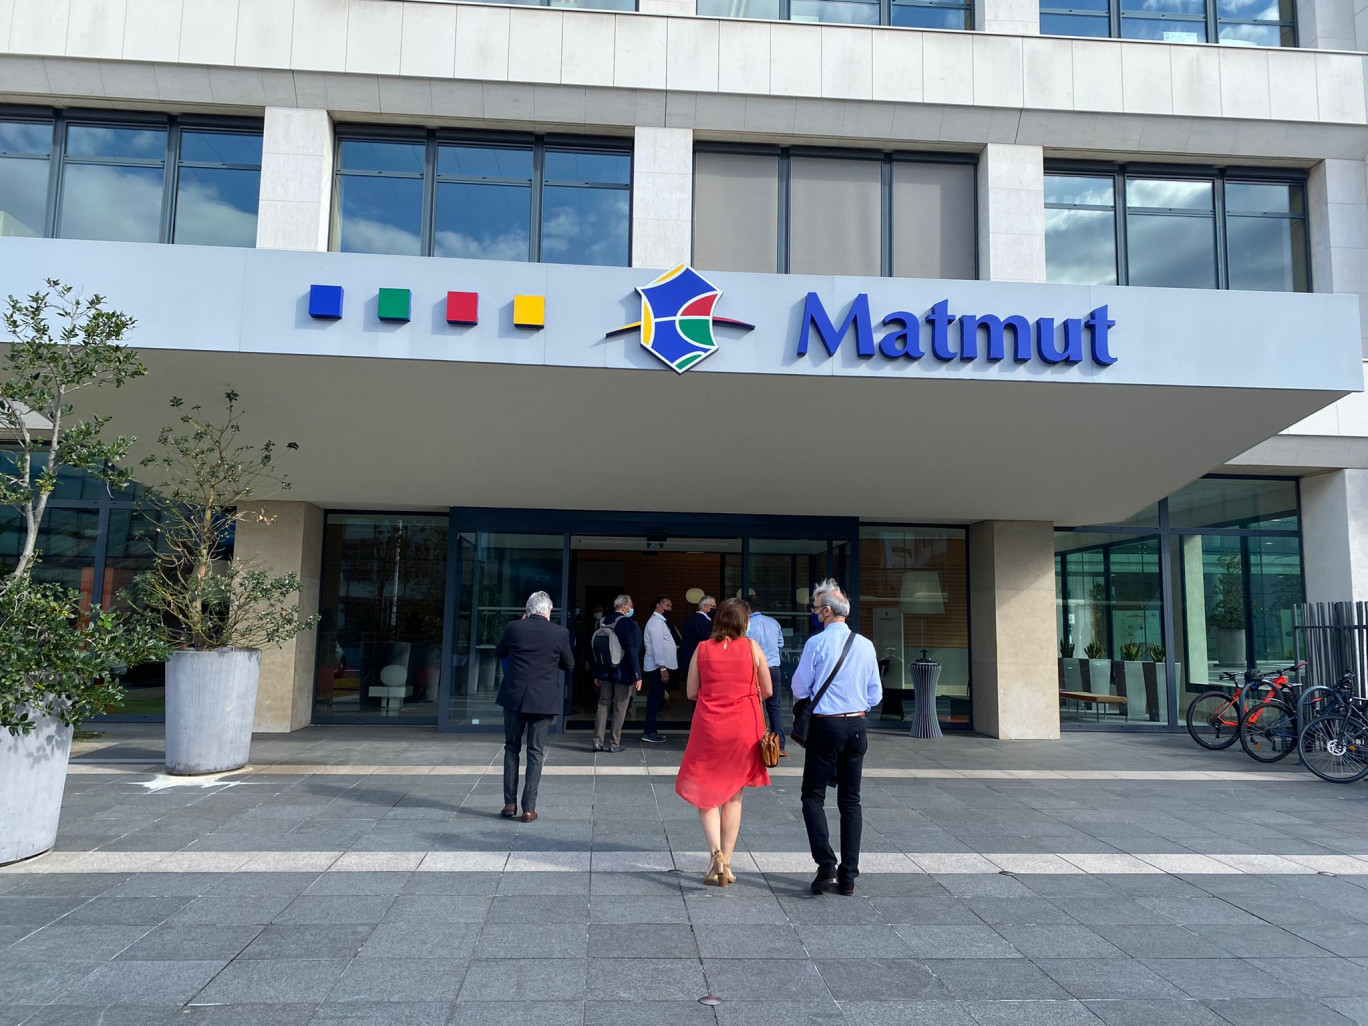 Le siège social du groupe Matmut se situe sur la rive gauche de Rouen. (Photo Chl.G/Gazette Normandie)